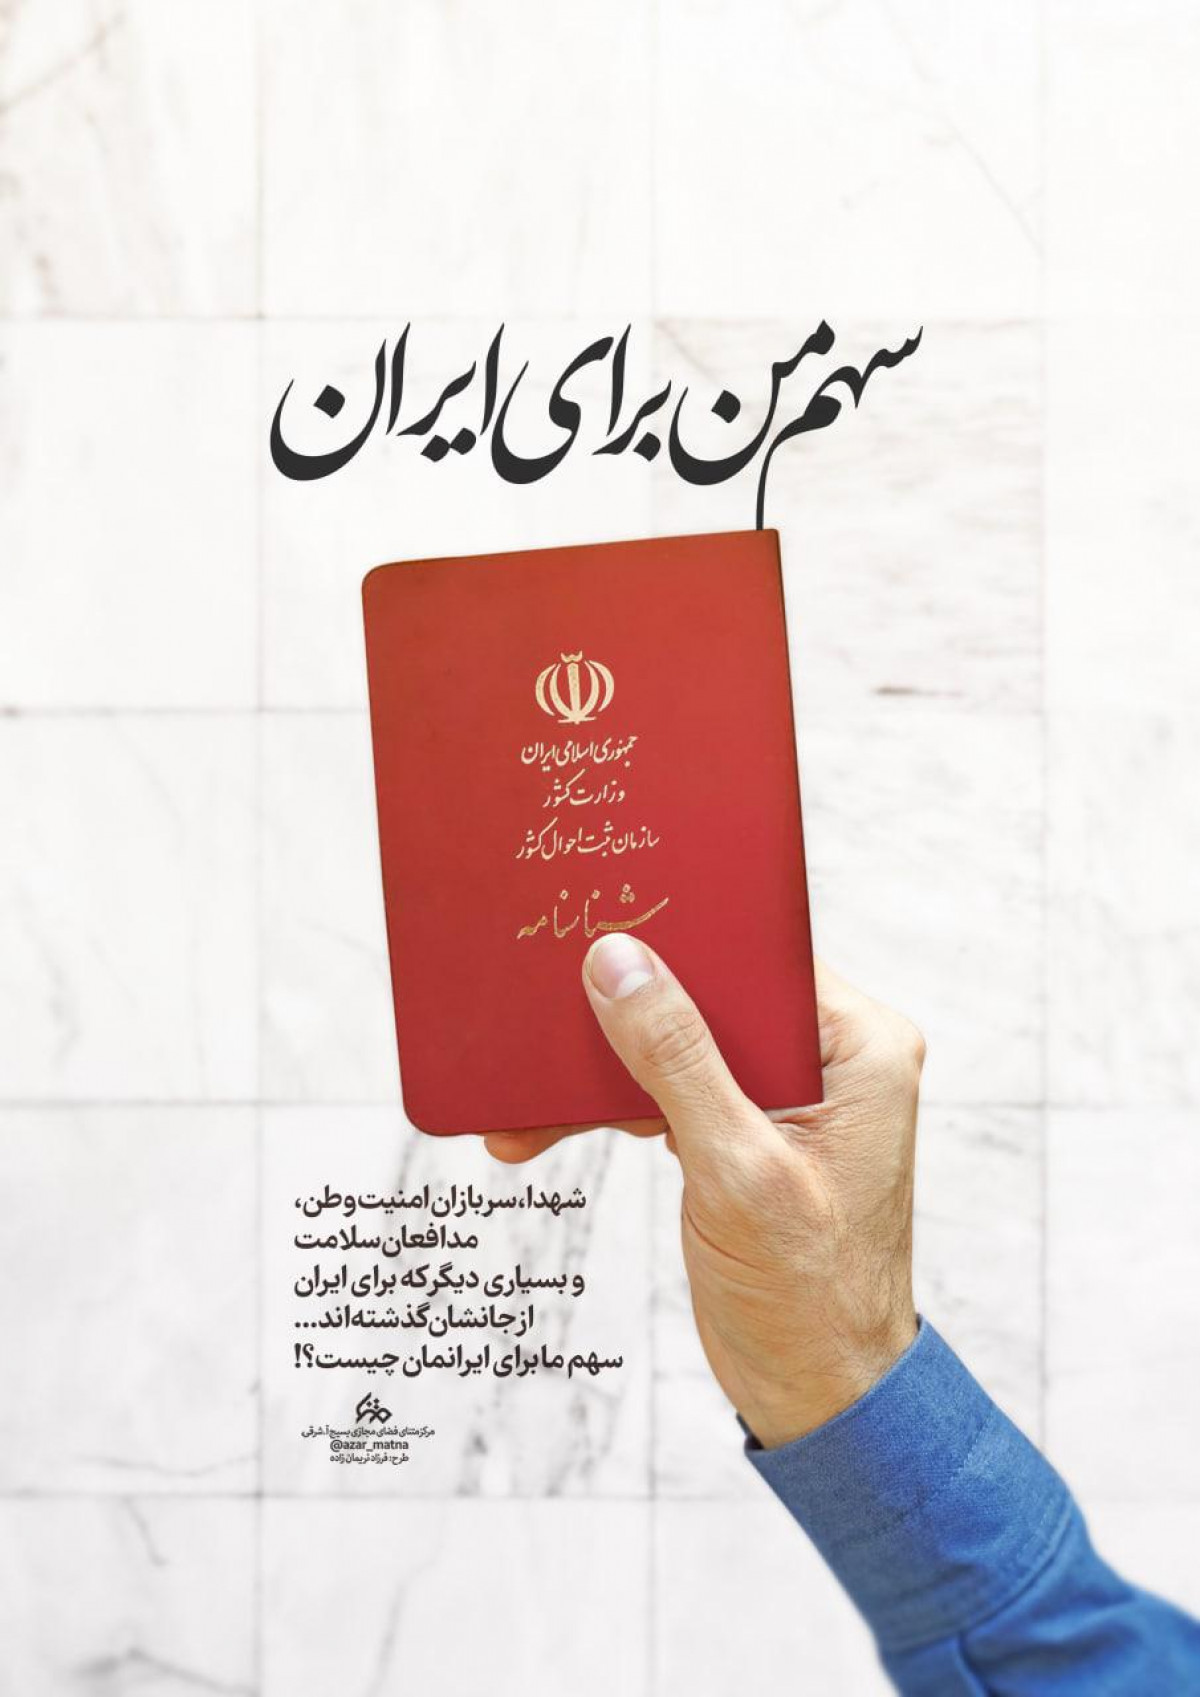 سهم من برای ایران